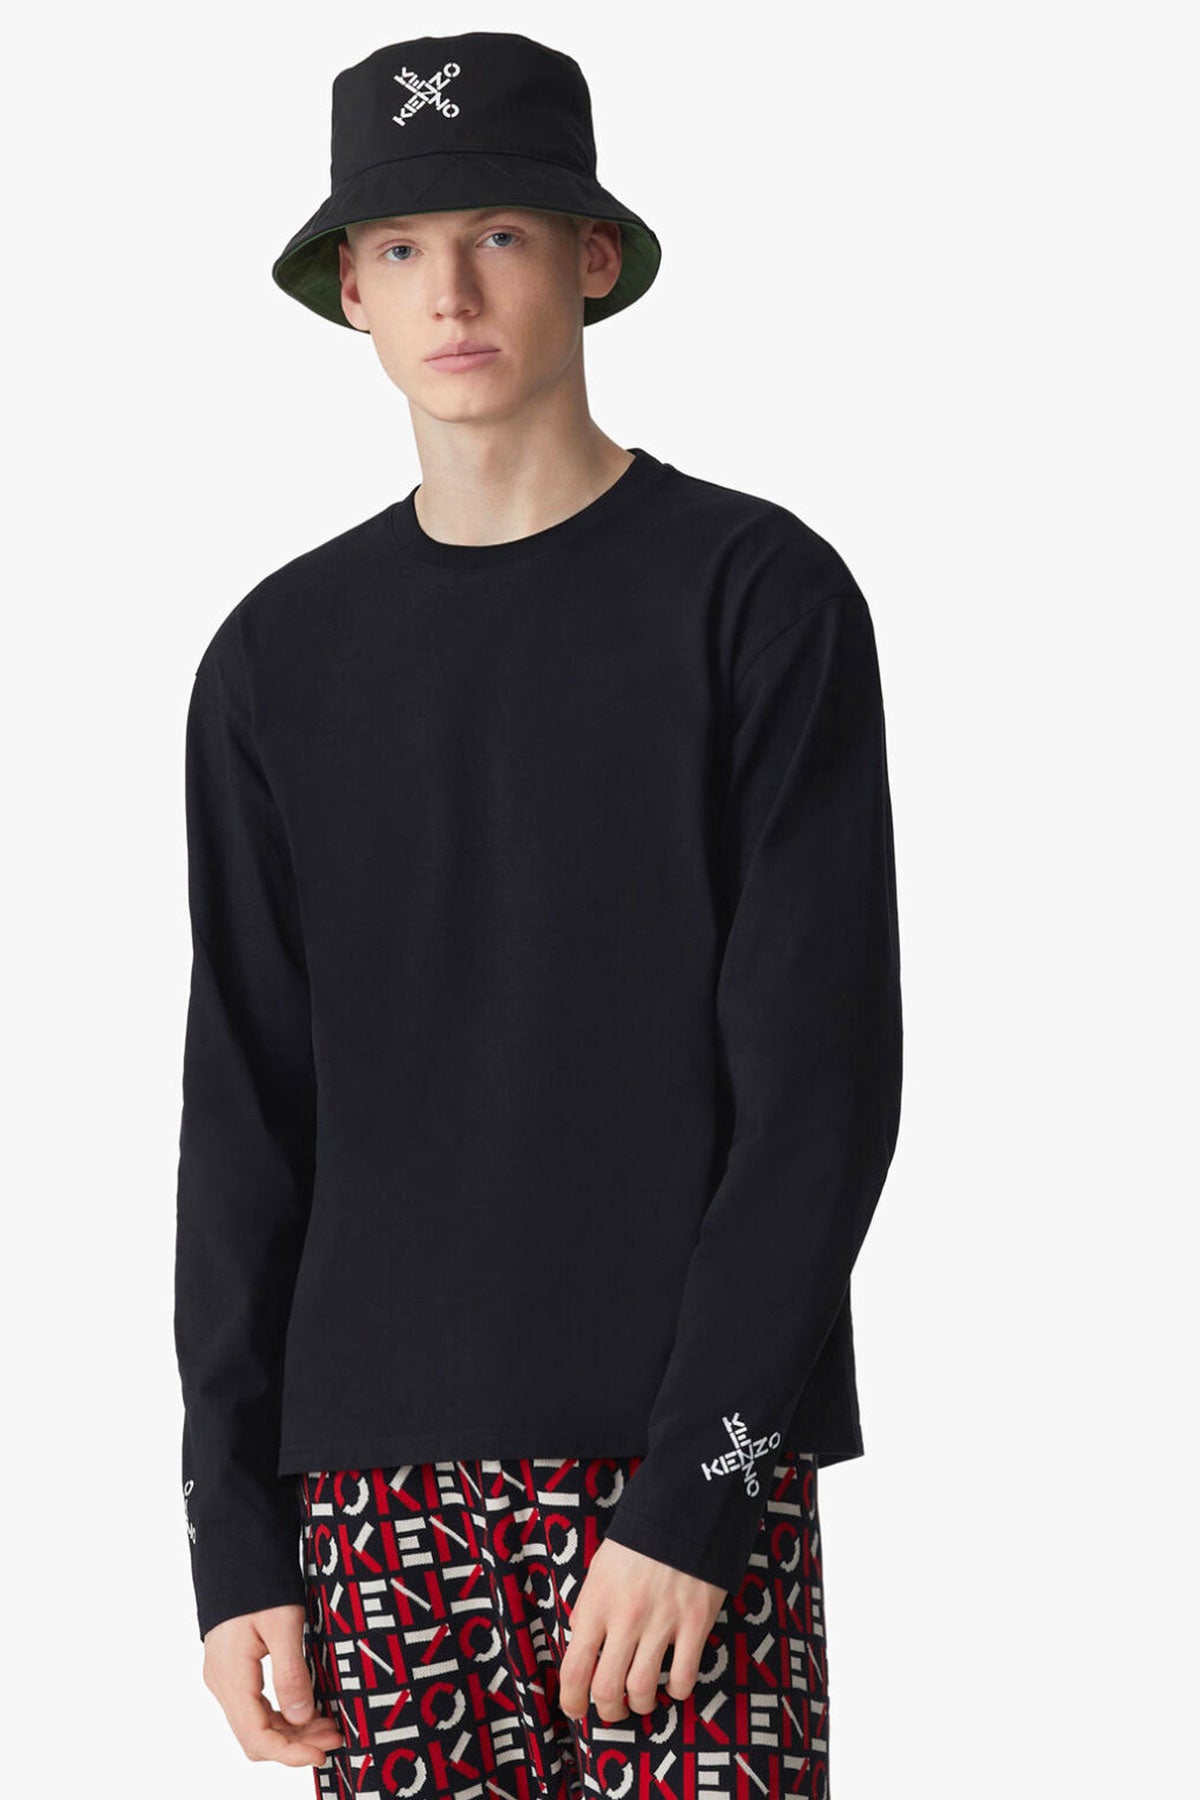 Kenzo Sport Sweatshirt-Libas Trendy Fashion Store